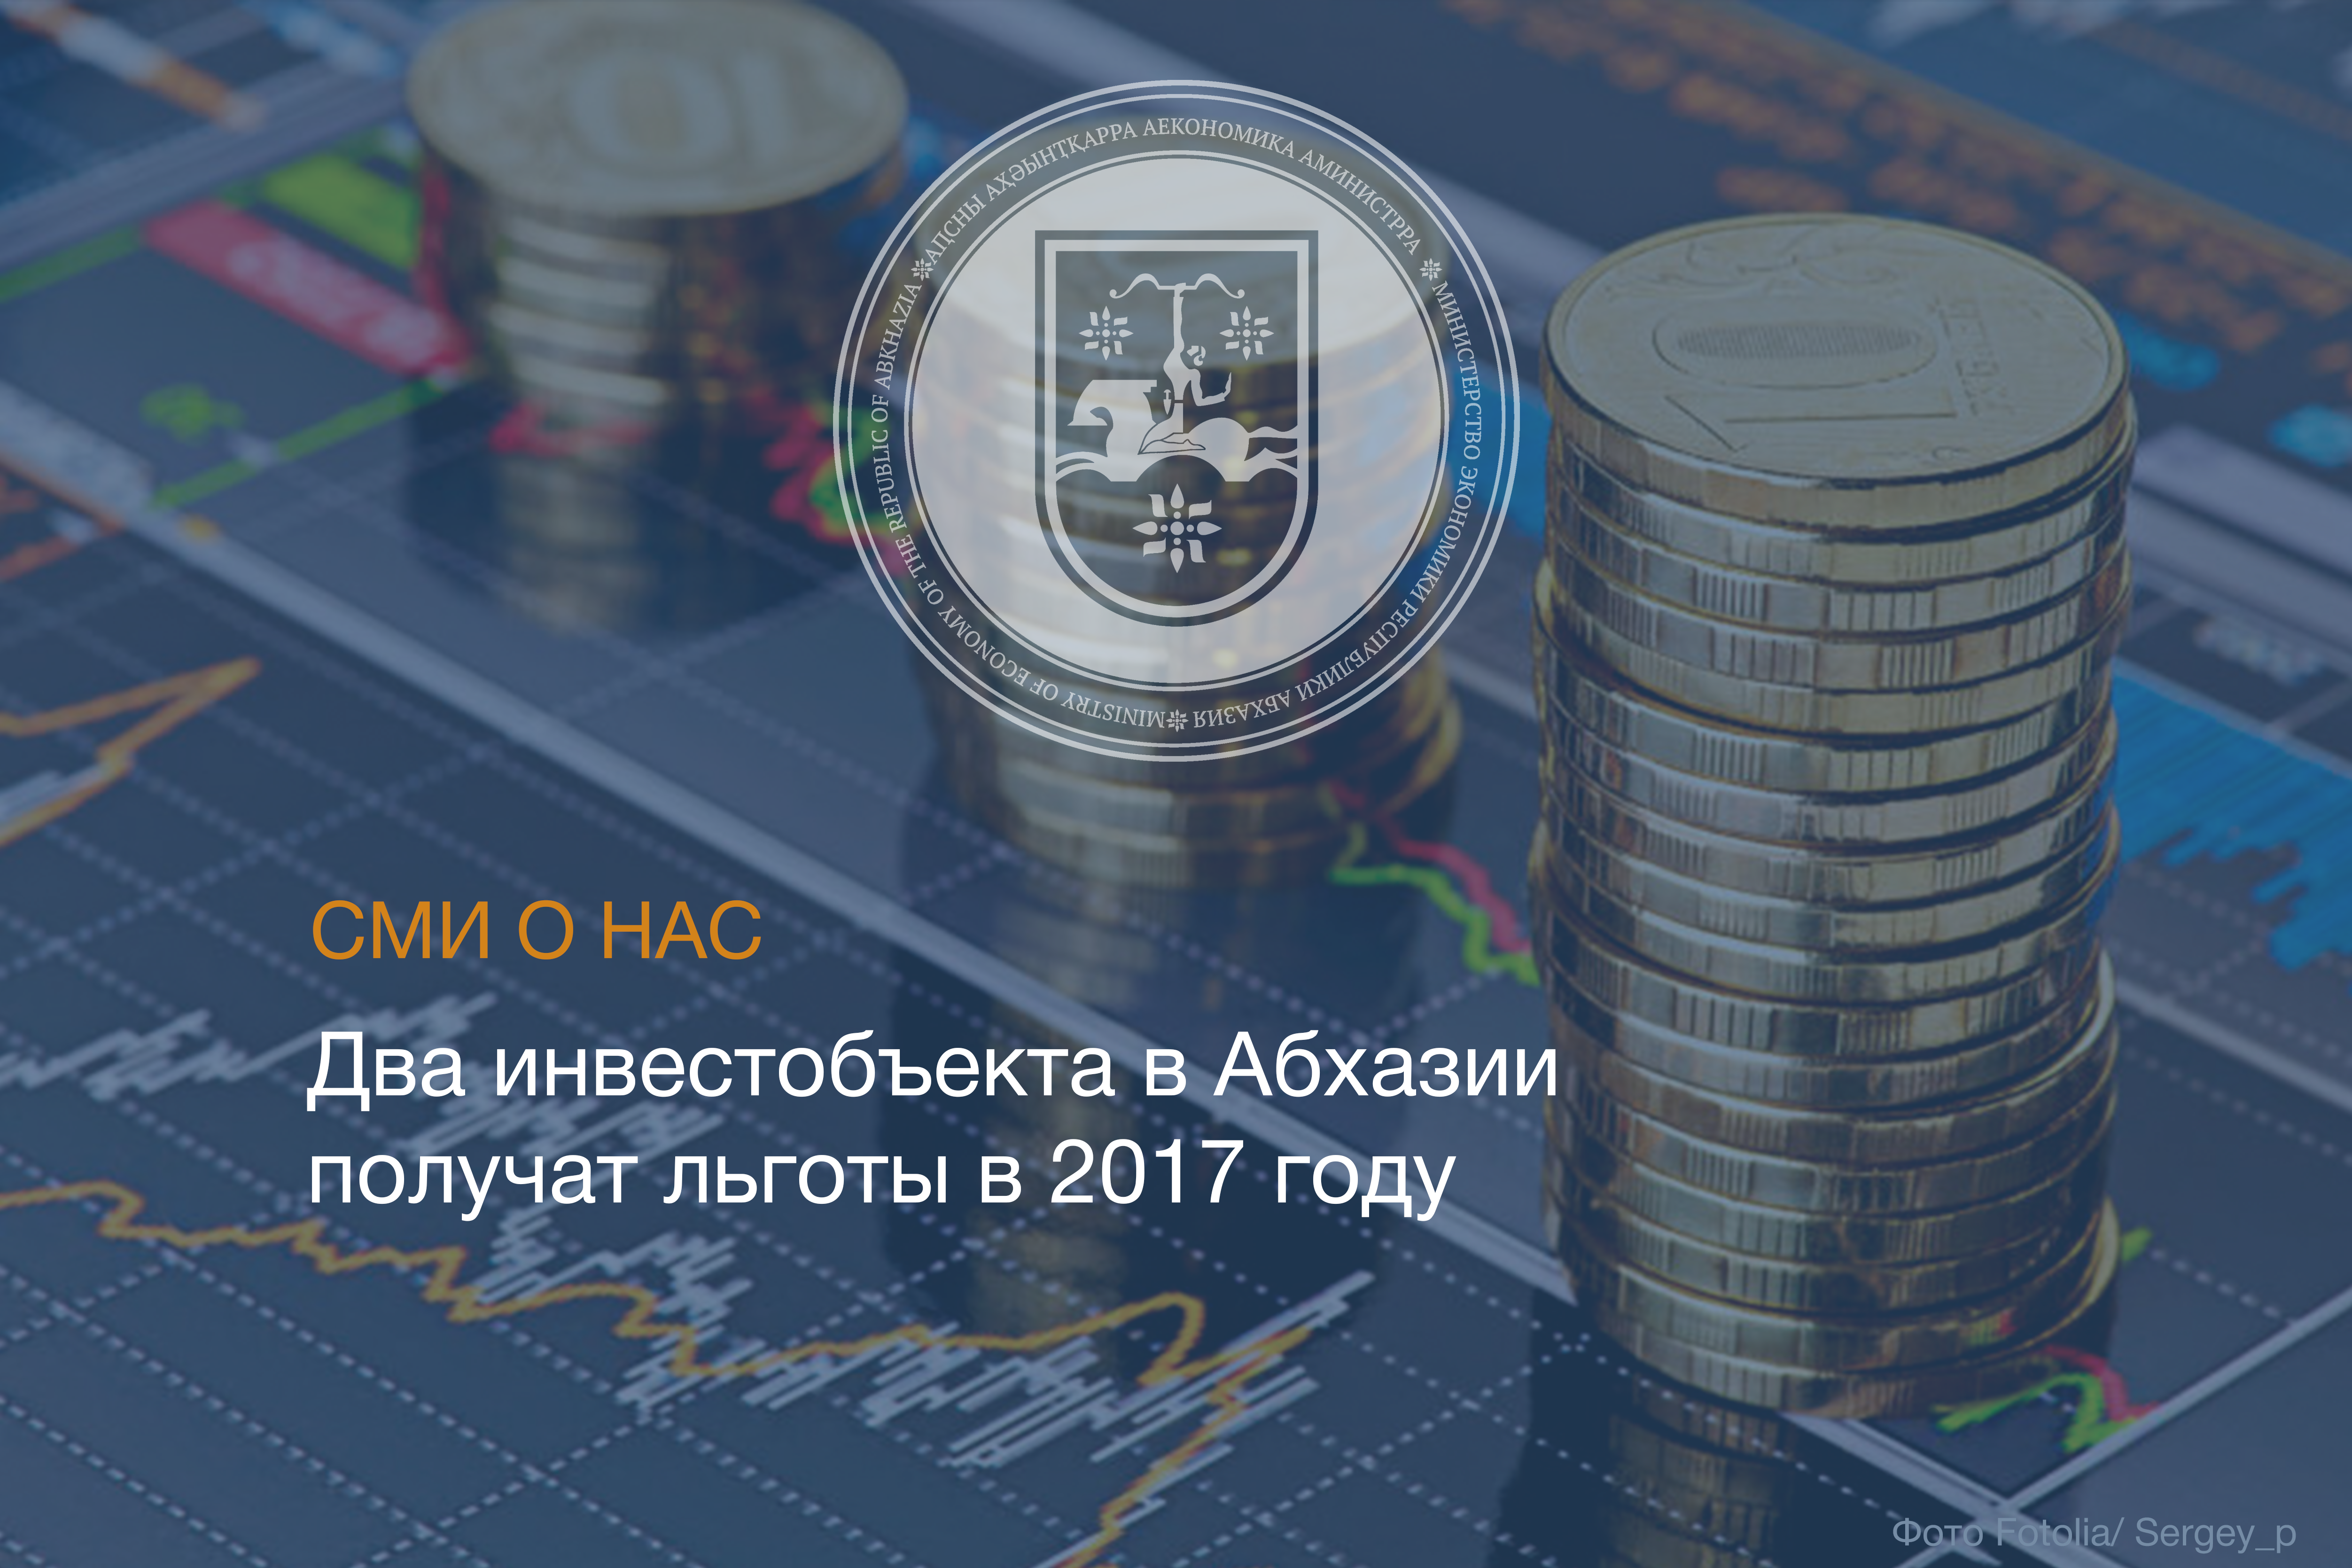 Два инвестобъекта в Абхазии получат льготы в 2017 году